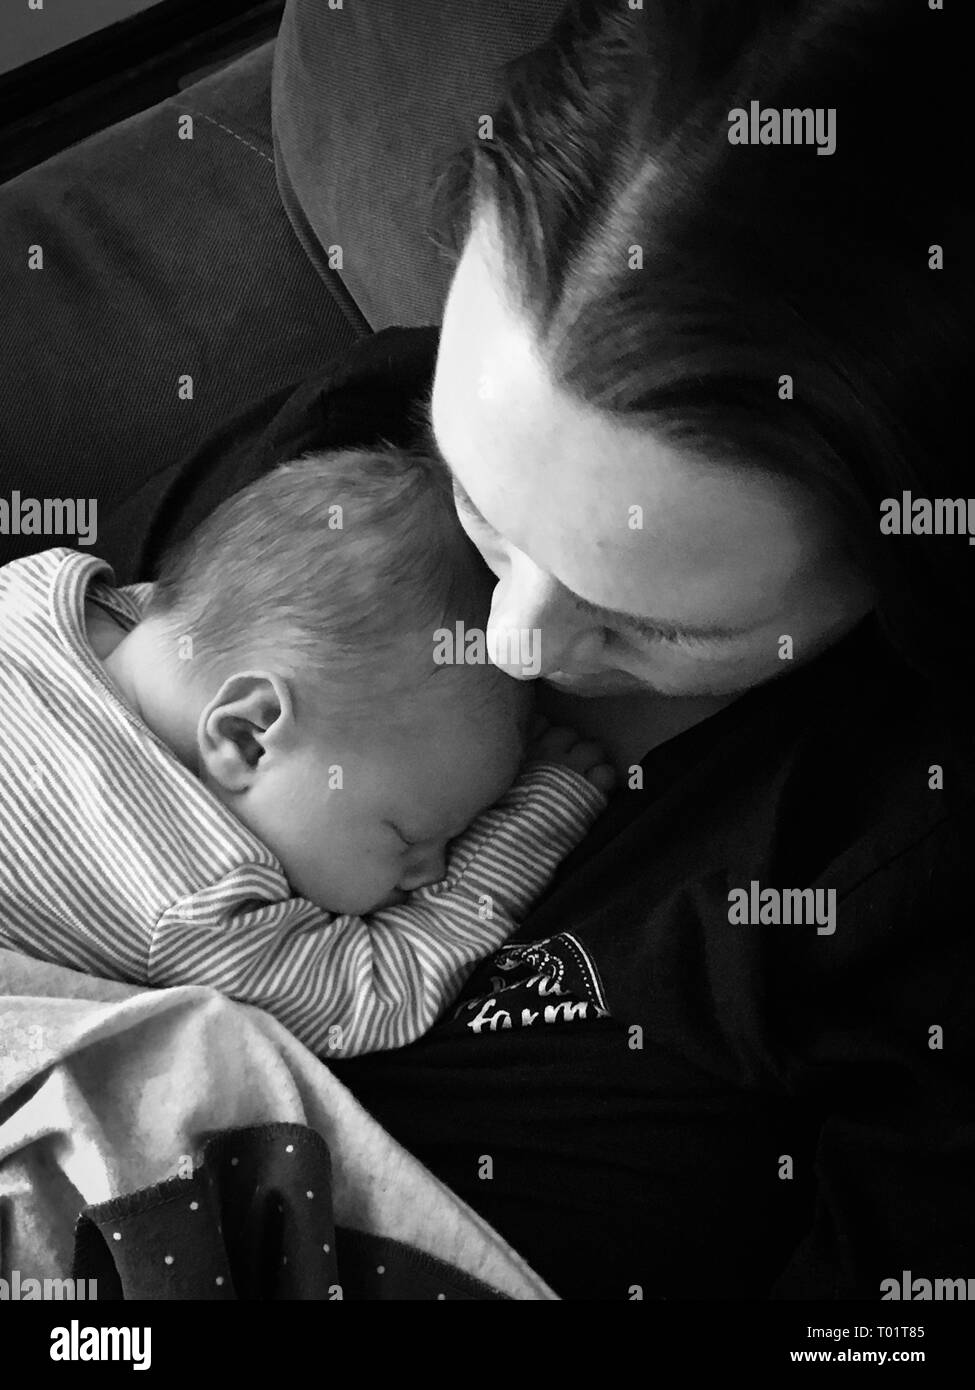 Immagine pacifica di un neonato cuddling con sua madre il primo giorno a casa dall'ospedale. Eccellente per la Festa della mamma usa,pro vita/pro Scelta articolo Foto Stock